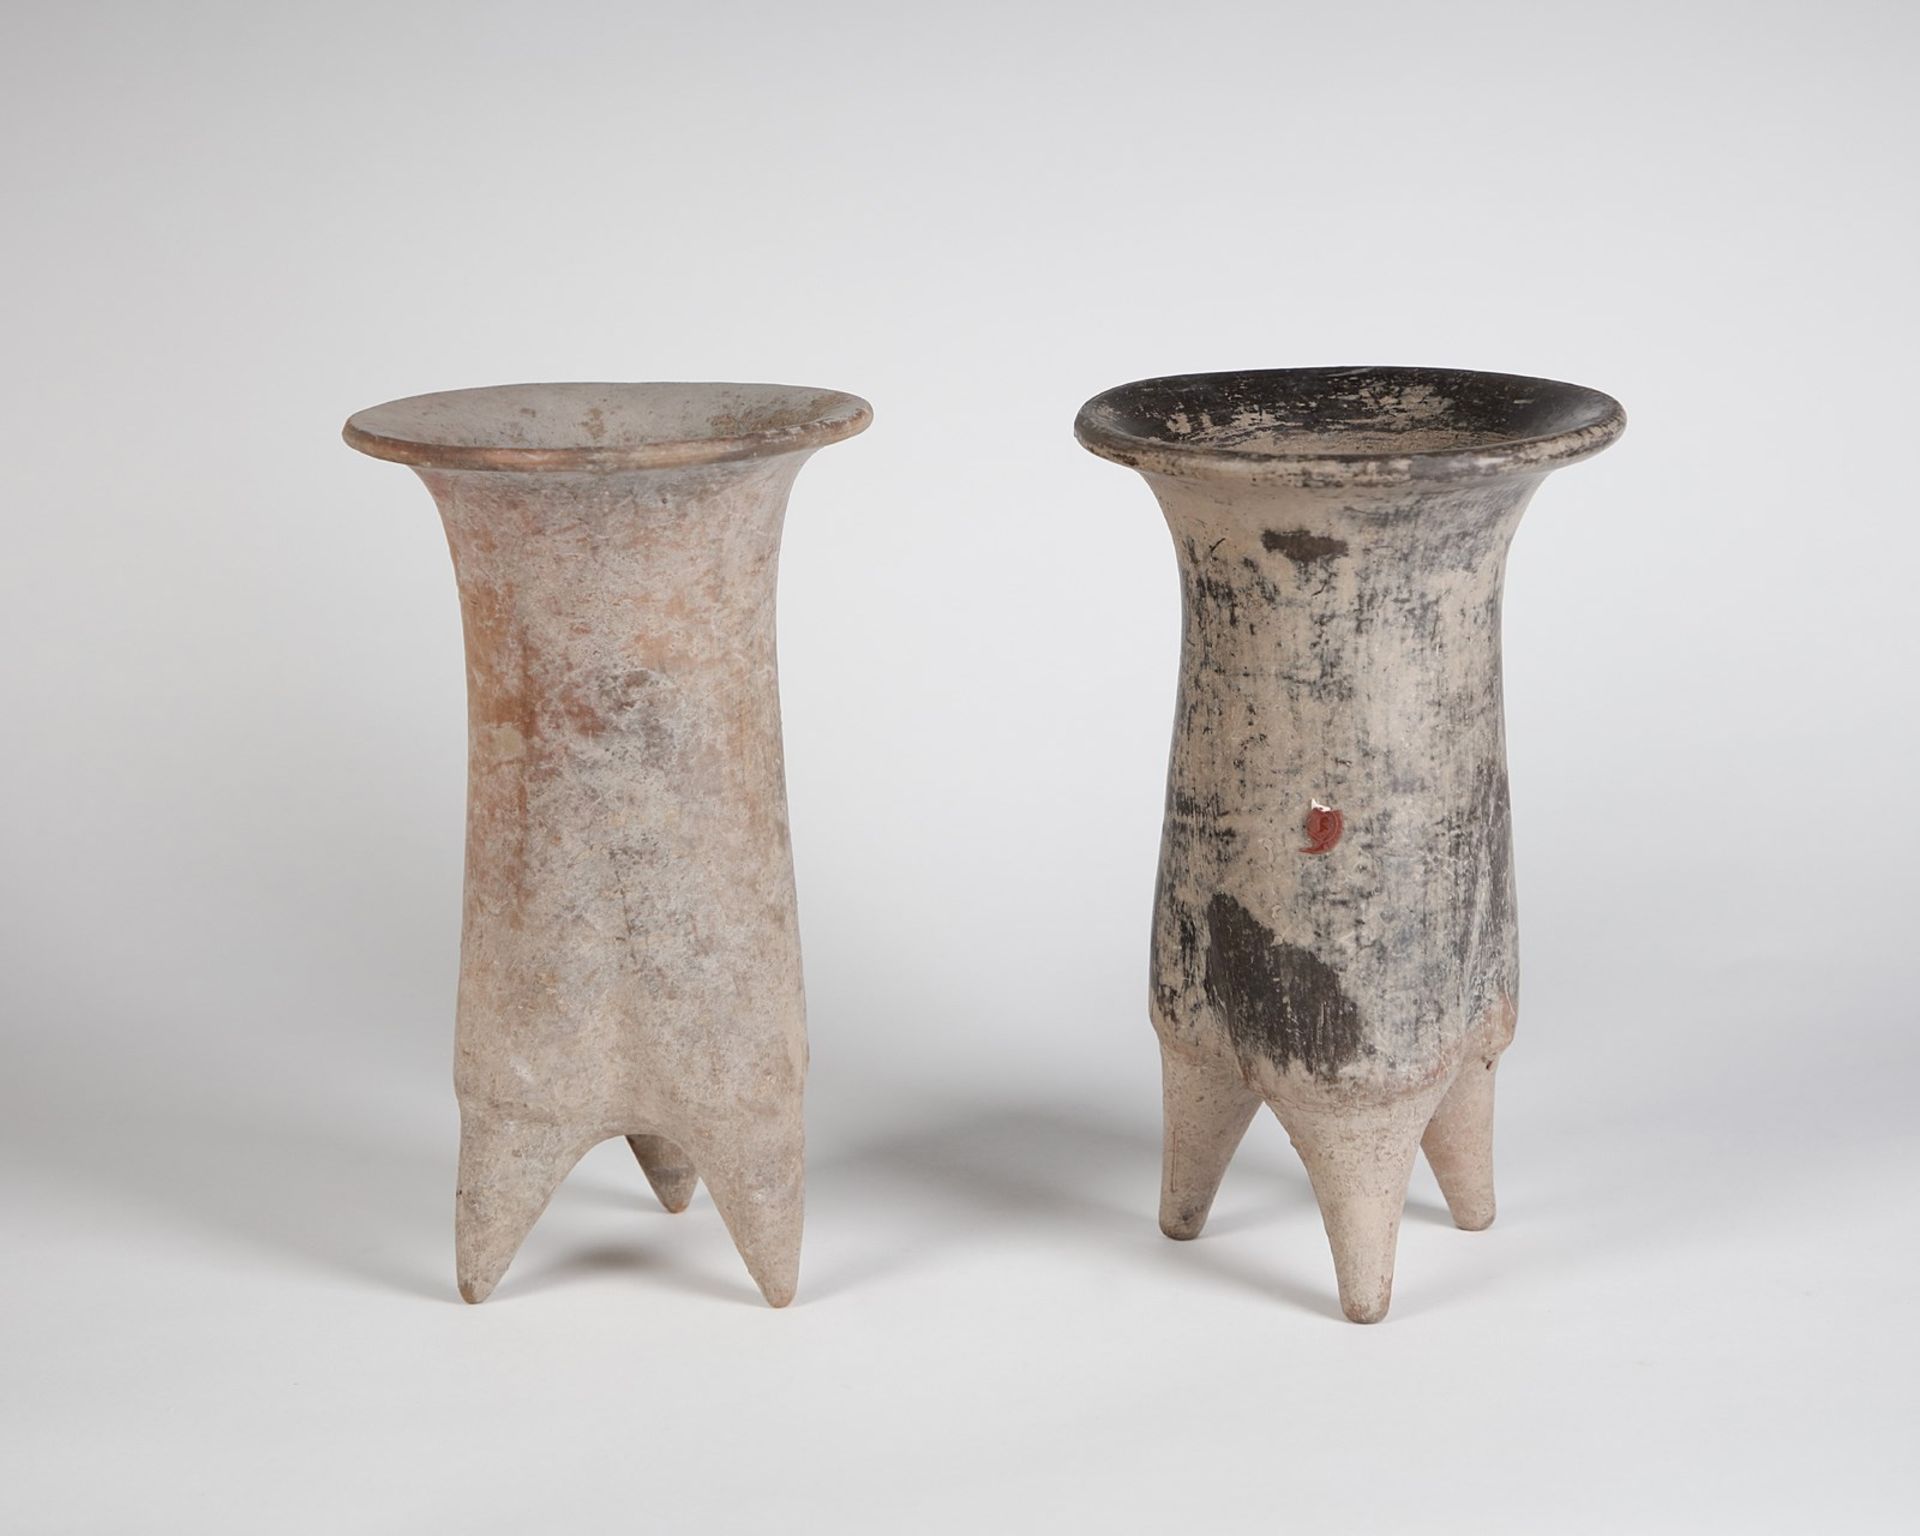 Arte Cinese Two earthenware tripod (li) vasesChina, Lower Xiajiadian Culture, ca. 1900-1300 b.C..